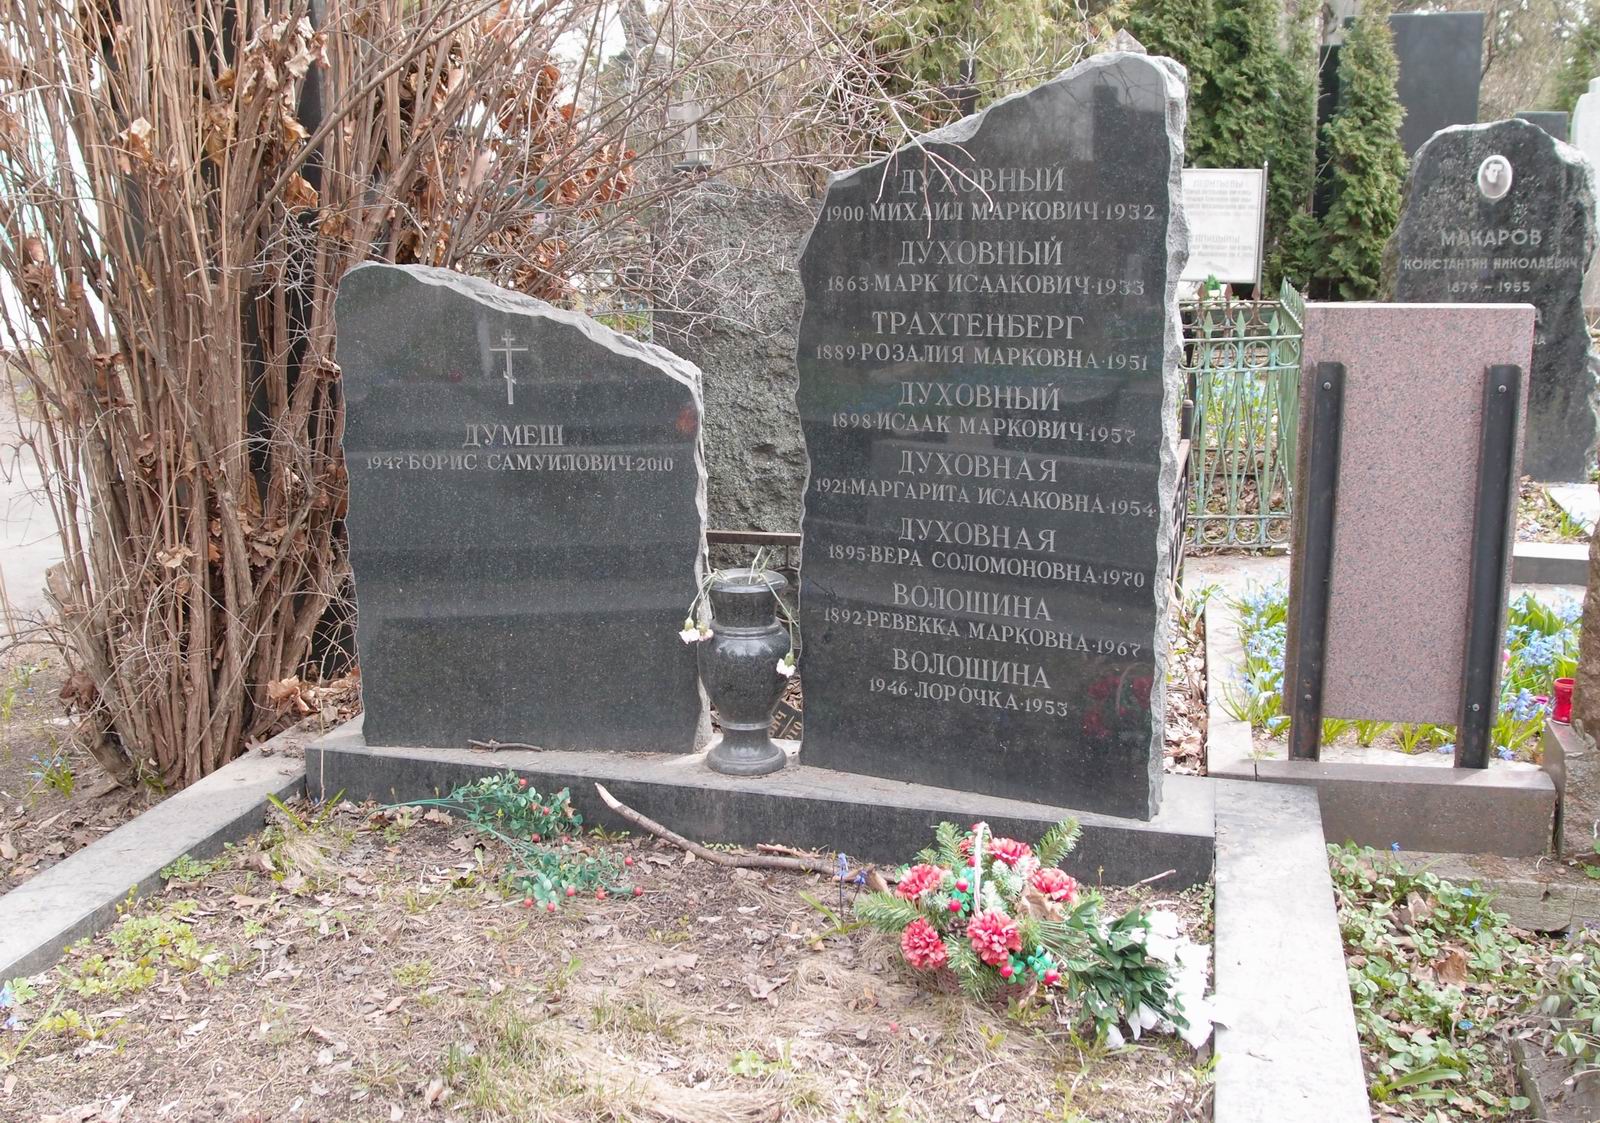 Памятник на могиле Духовного М.И. (1863-1933), на Новодевичьем кладбище (3-6-16).